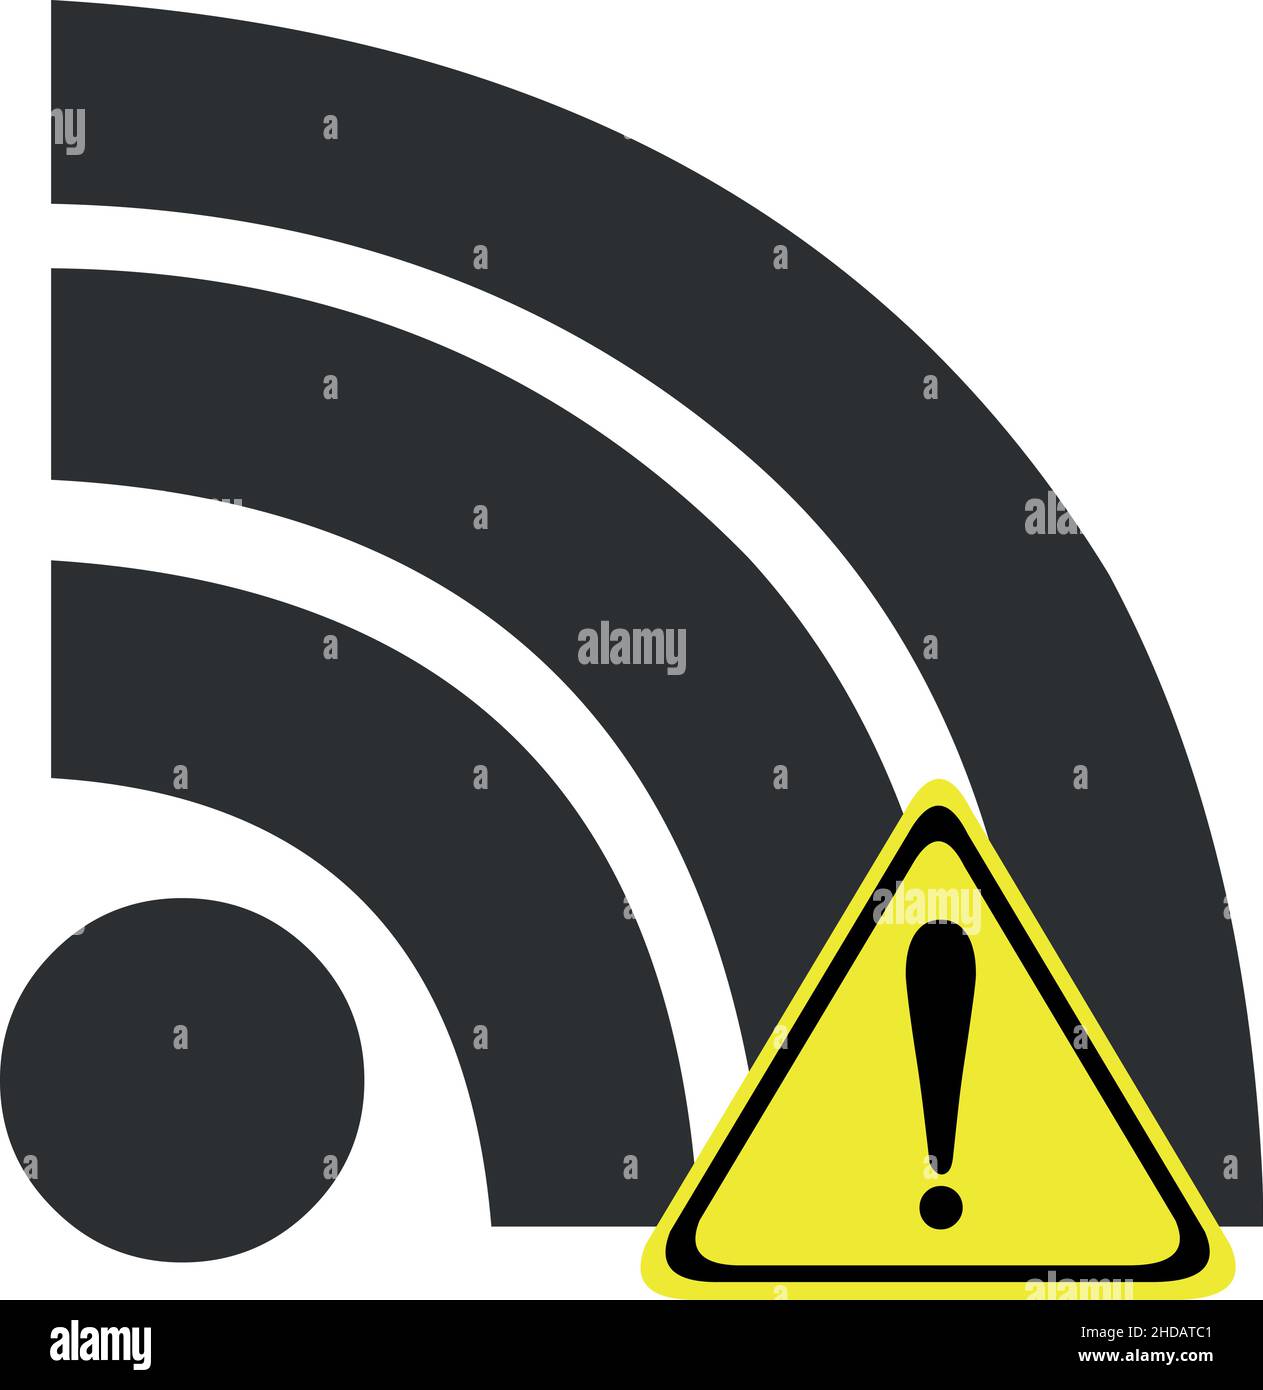 Ilustración vectorial del icono o símbolo de wi-fi con un signo de exclamación, en concepto de Internet desconectado o señal baja Ilustración del Vector